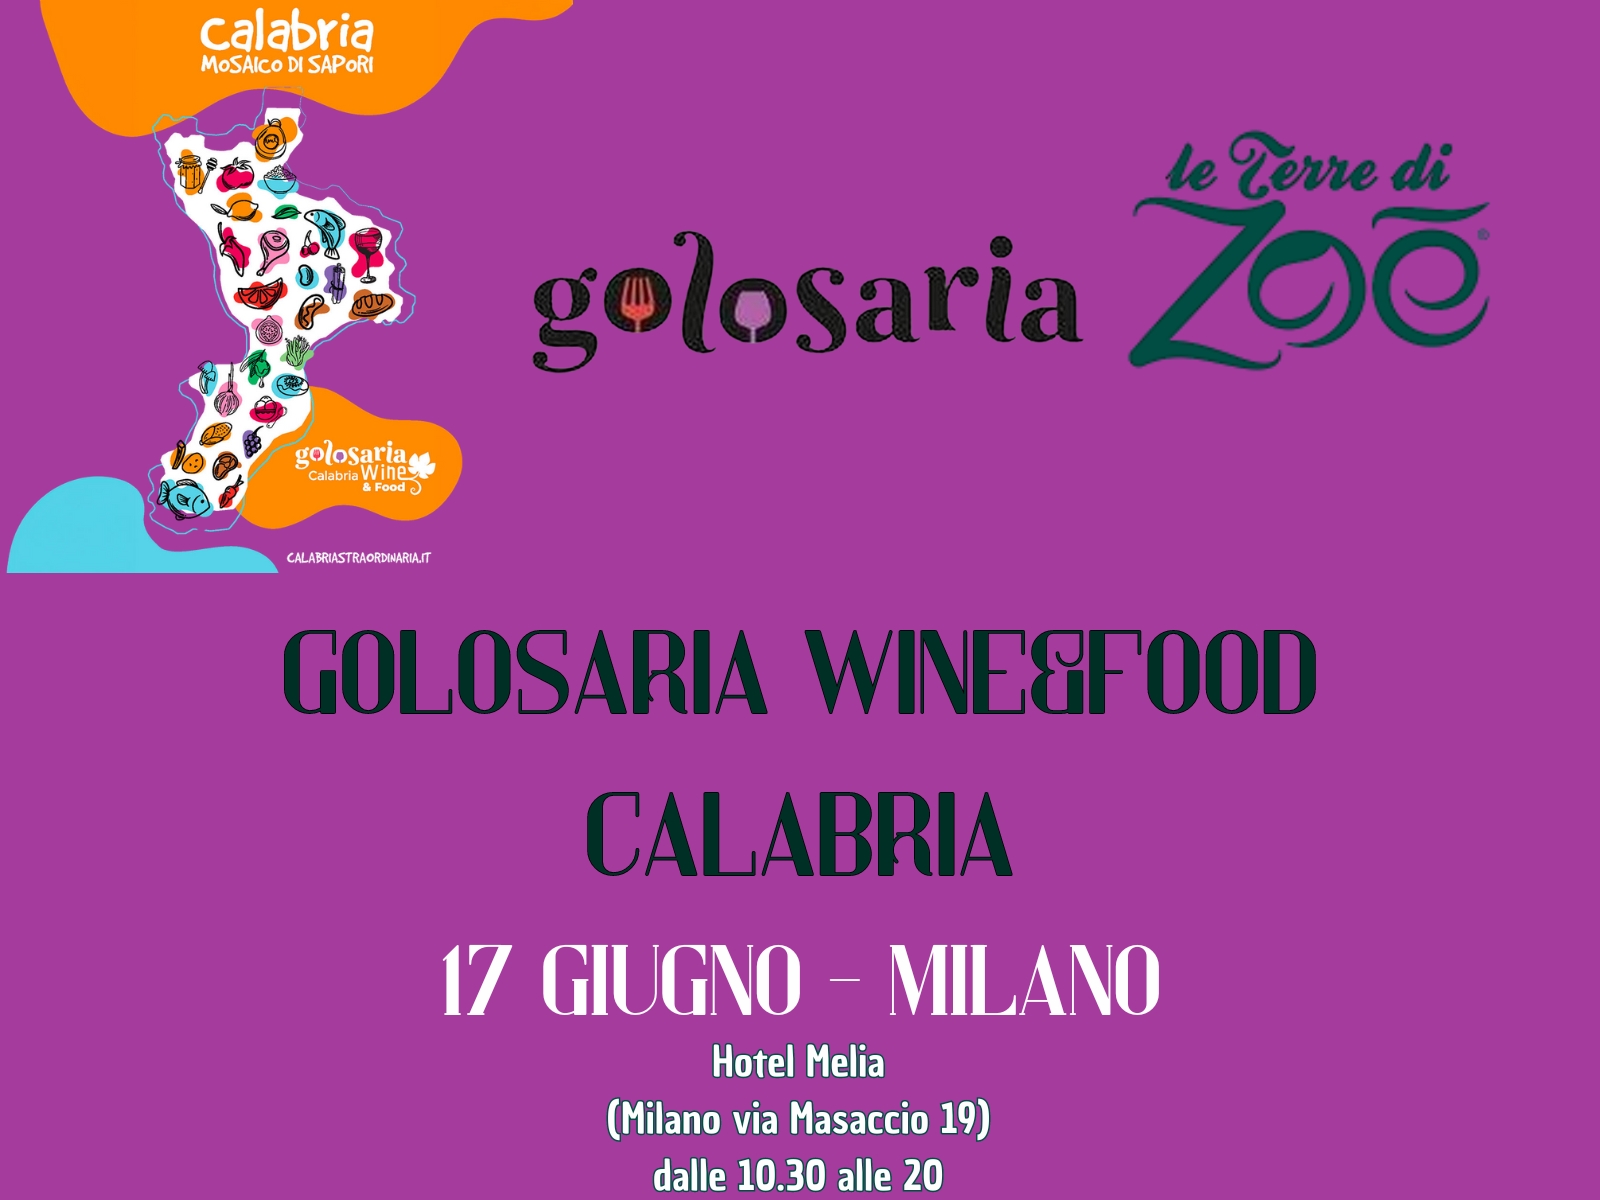 Exhibition Golosaria Wine e Food Calabria: 17/6/24 Milano Hotel Melia Le terre di zoè